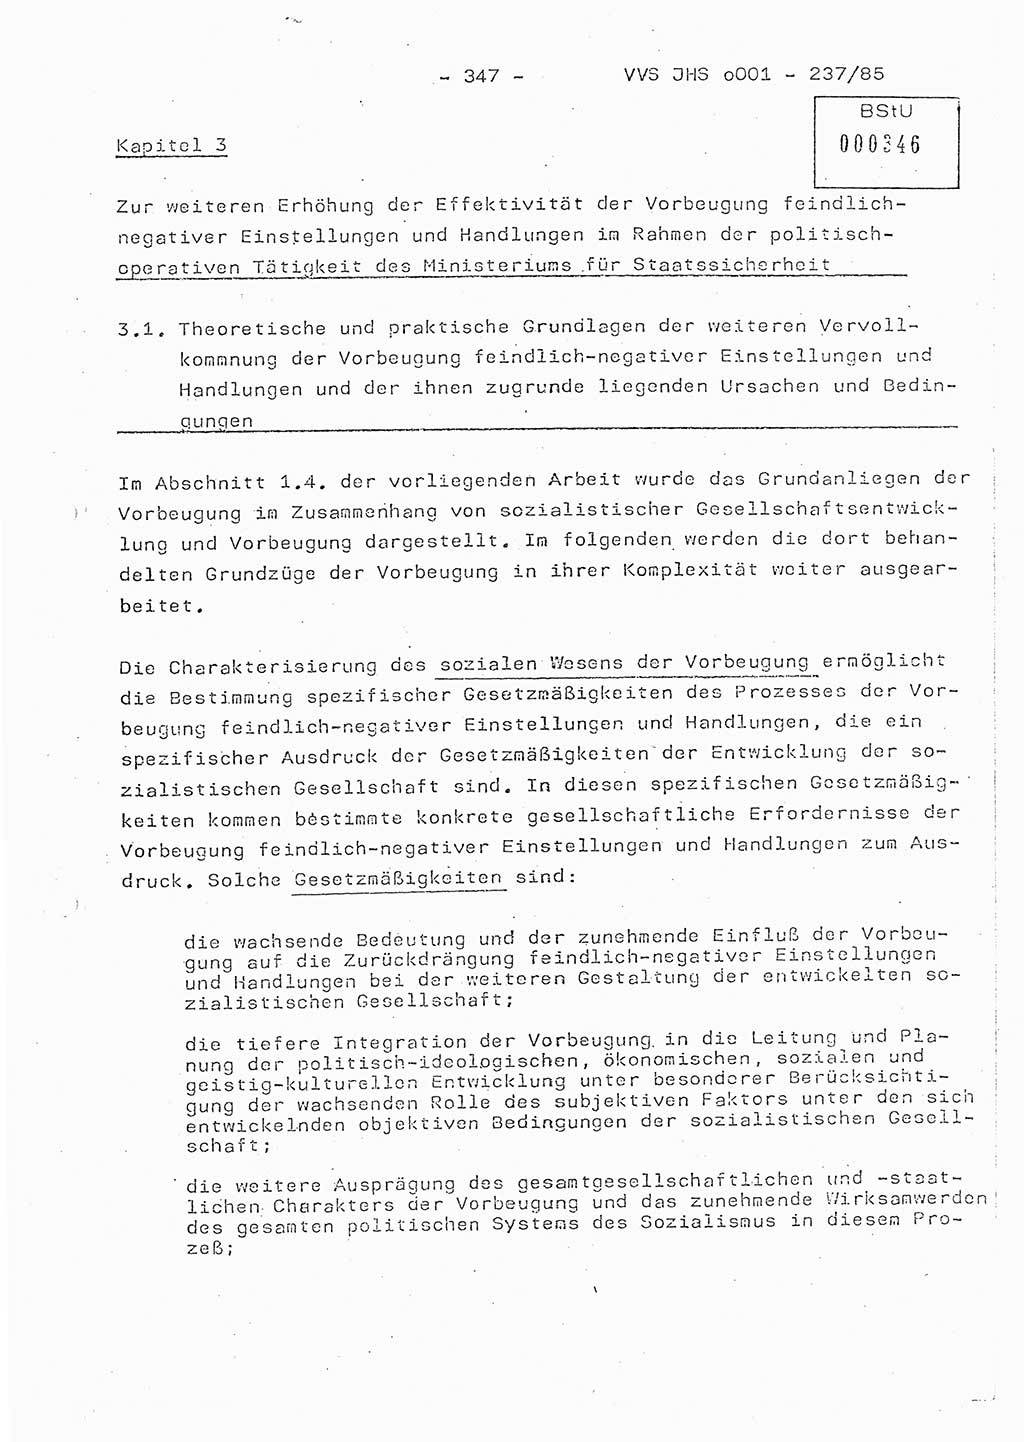 Dissertation Oberstleutnant Peter Jakulski (JHS), Oberstleutnat Christian Rudolph (HA Ⅸ), Major Horst Böttger (ZMD), Major Wolfgang Grüneberg (JHS), Major Albert Meutsch (JHS), Ministerium für Staatssicherheit (MfS) [Deutsche Demokratische Republik (DDR)], Juristische Hochschule (JHS), Vertrauliche Verschlußsache (VVS) o001-237/85, Potsdam 1985, Seite 347 (Diss. MfS DDR JHS VVS o001-237/85 1985, S. 347)